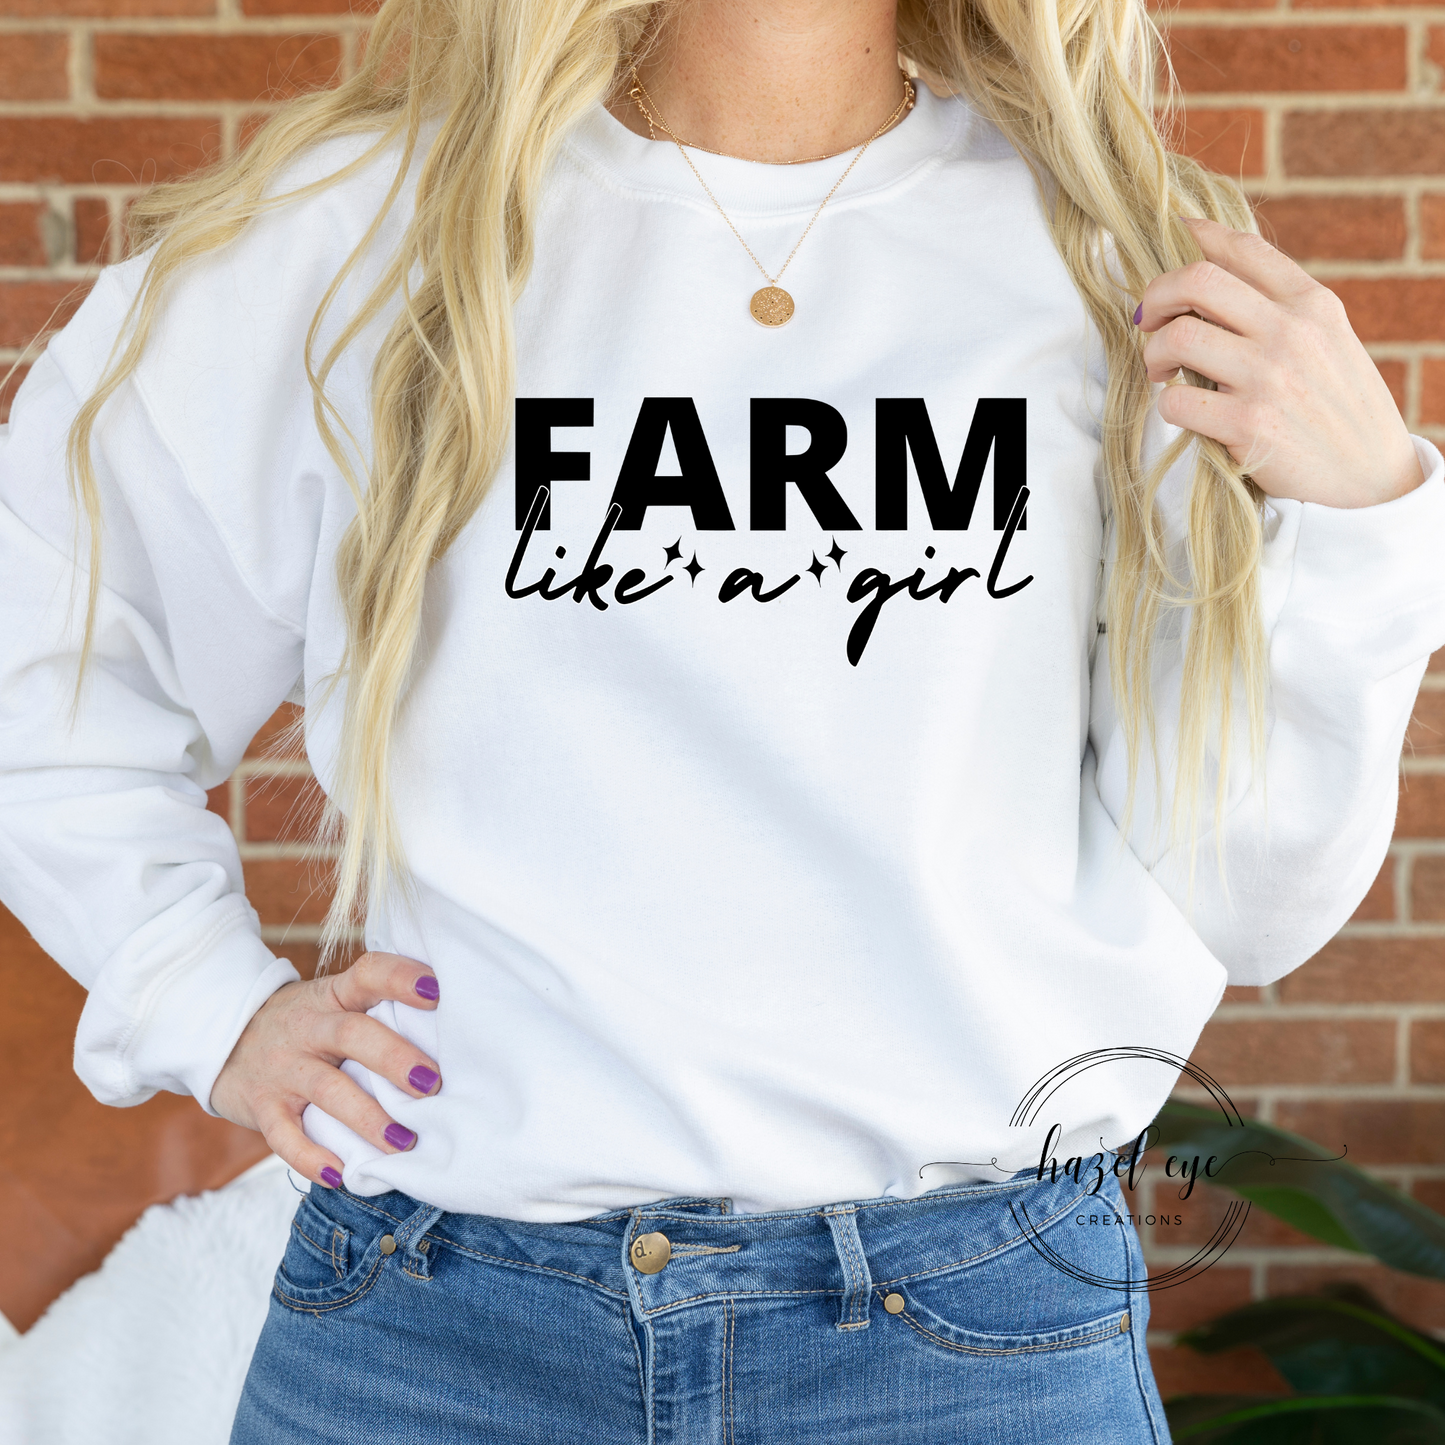 Farm like a girl